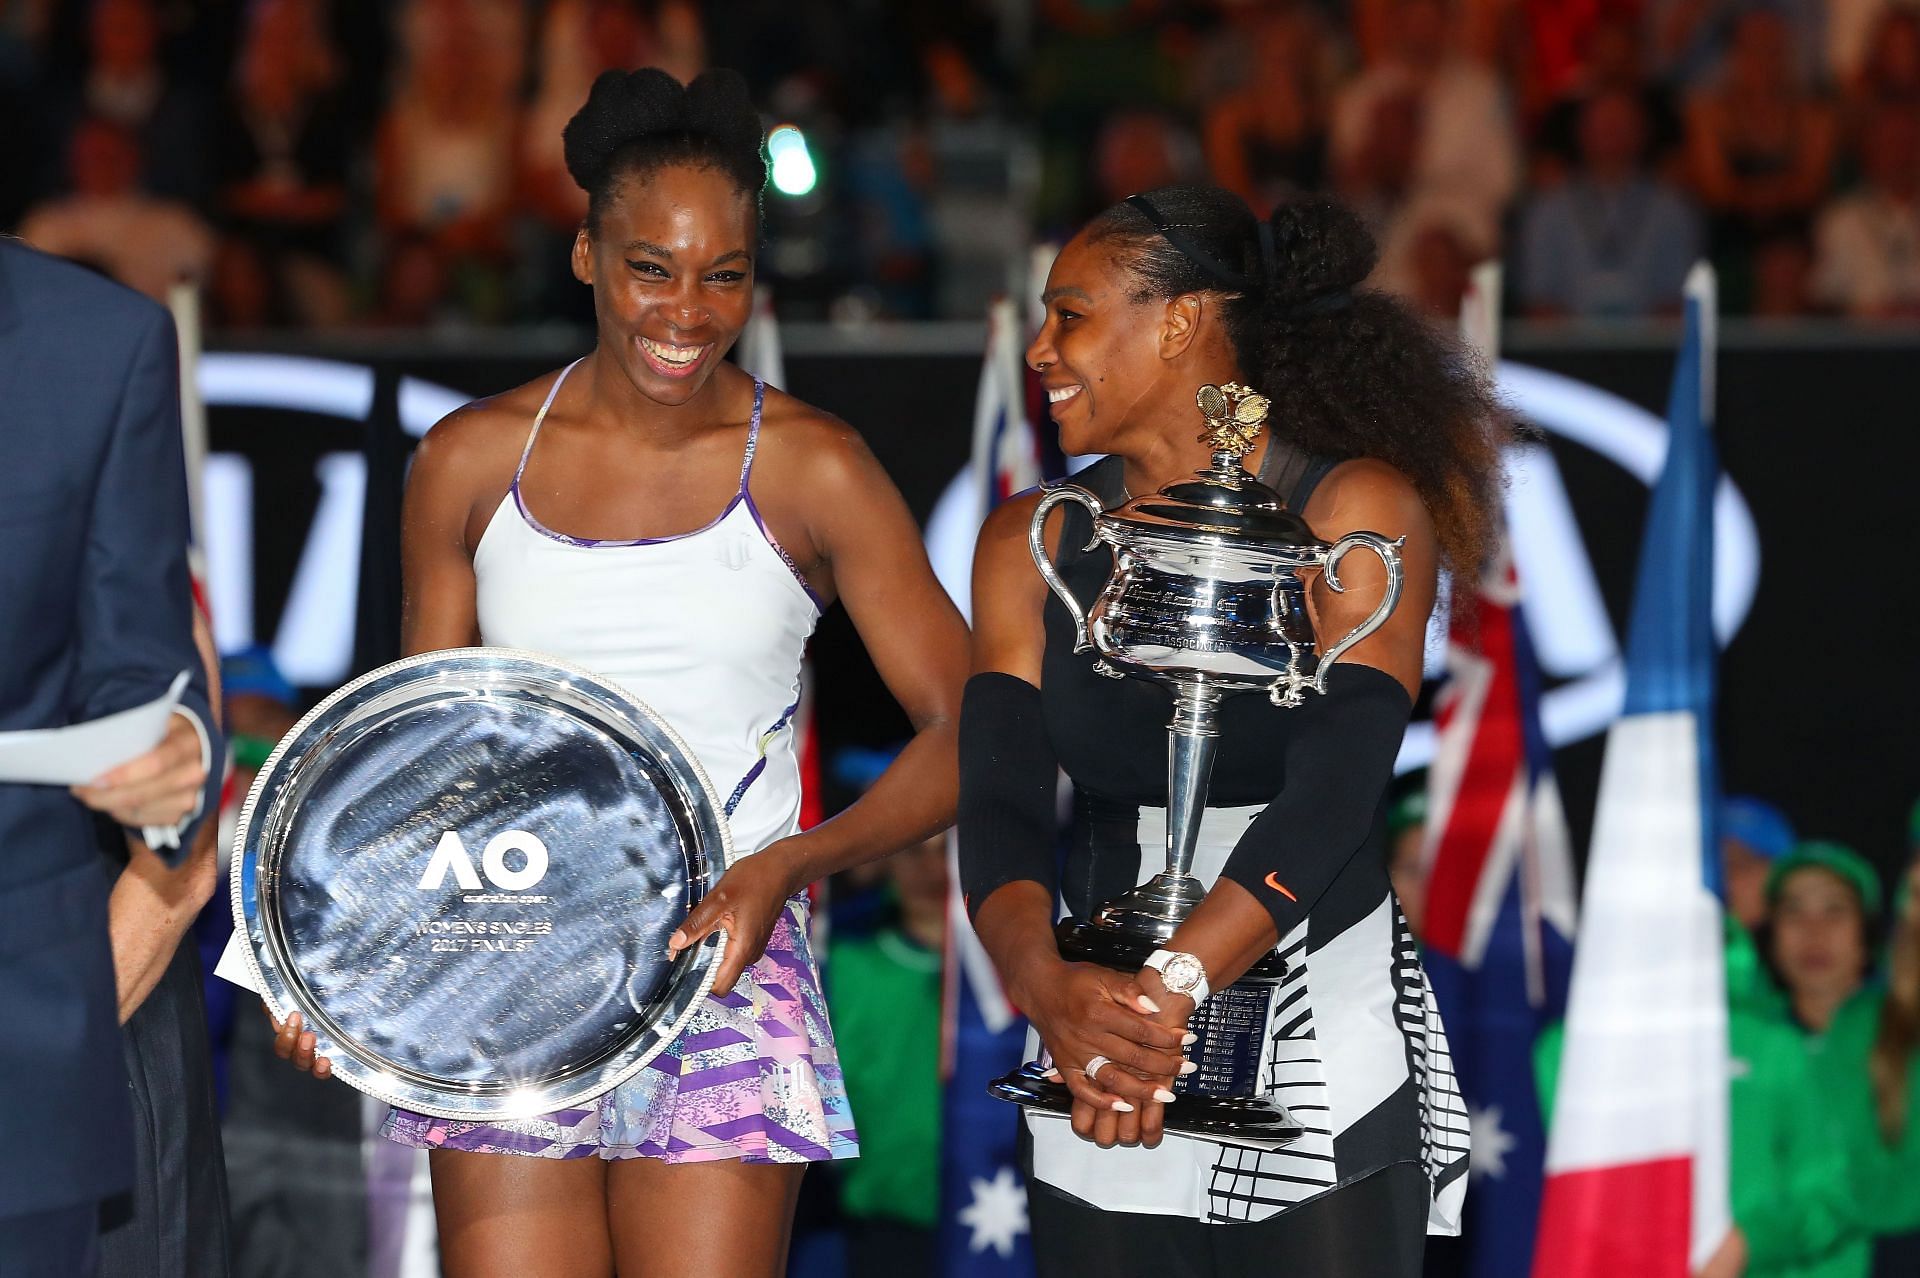 Venus Williams and Serena Williams